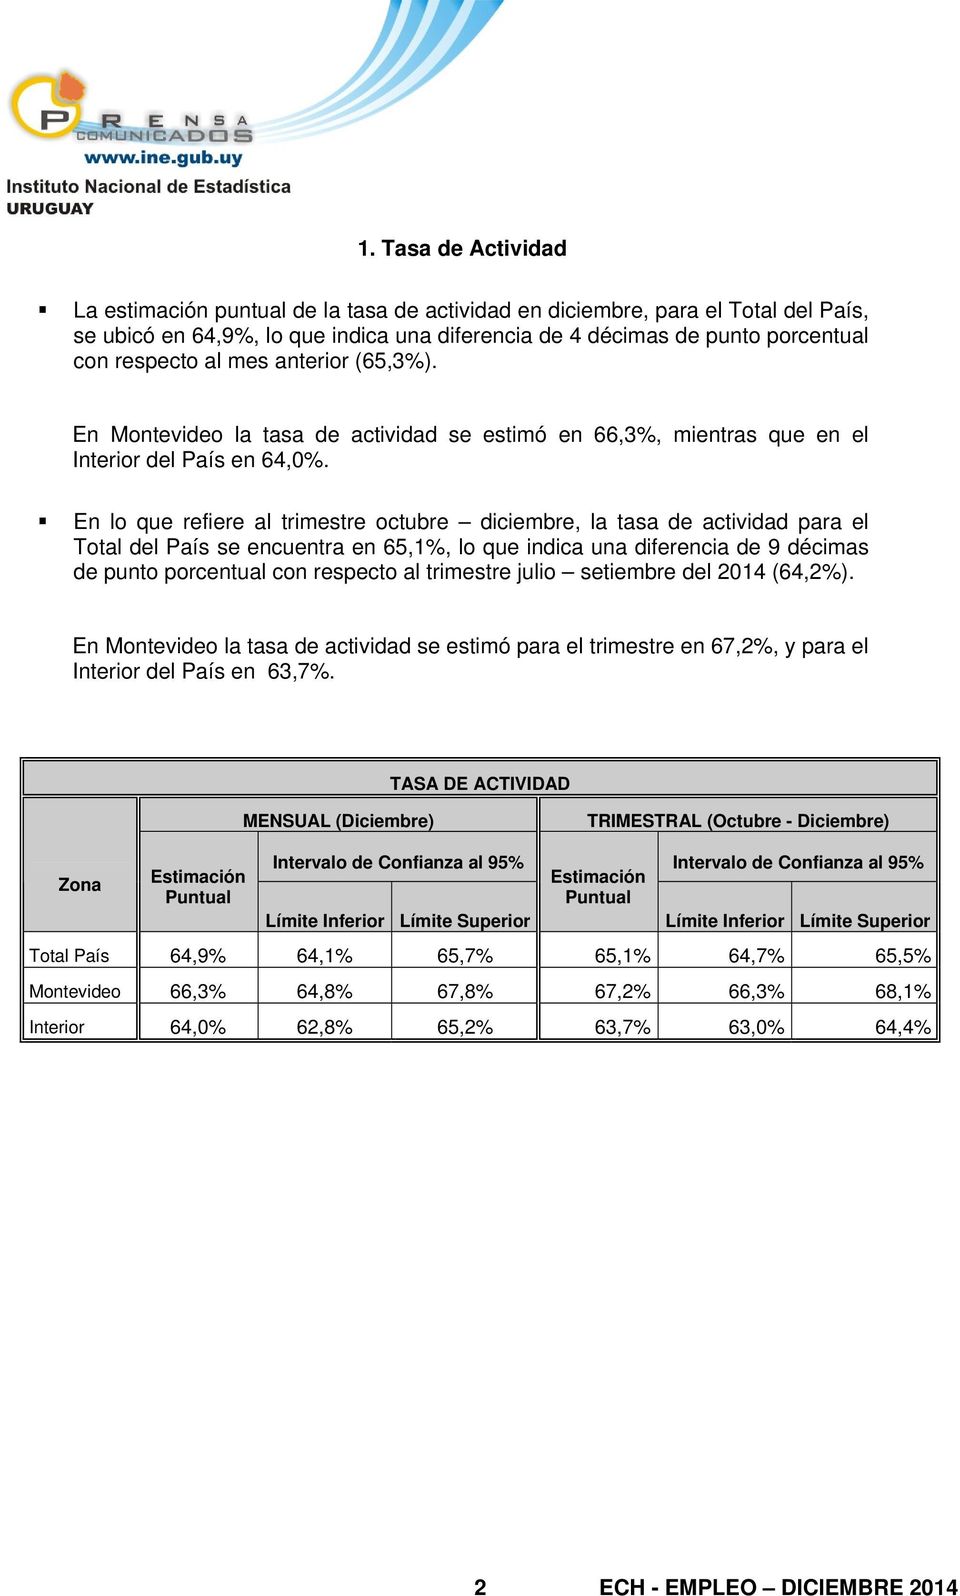 En lo que refiere al trimestre octubre diciembre, la tasa de actividad para el Total del País se encuentra en 65,1%, lo que indica una diferencia de 9 décimas de punto porcentual con respecto al